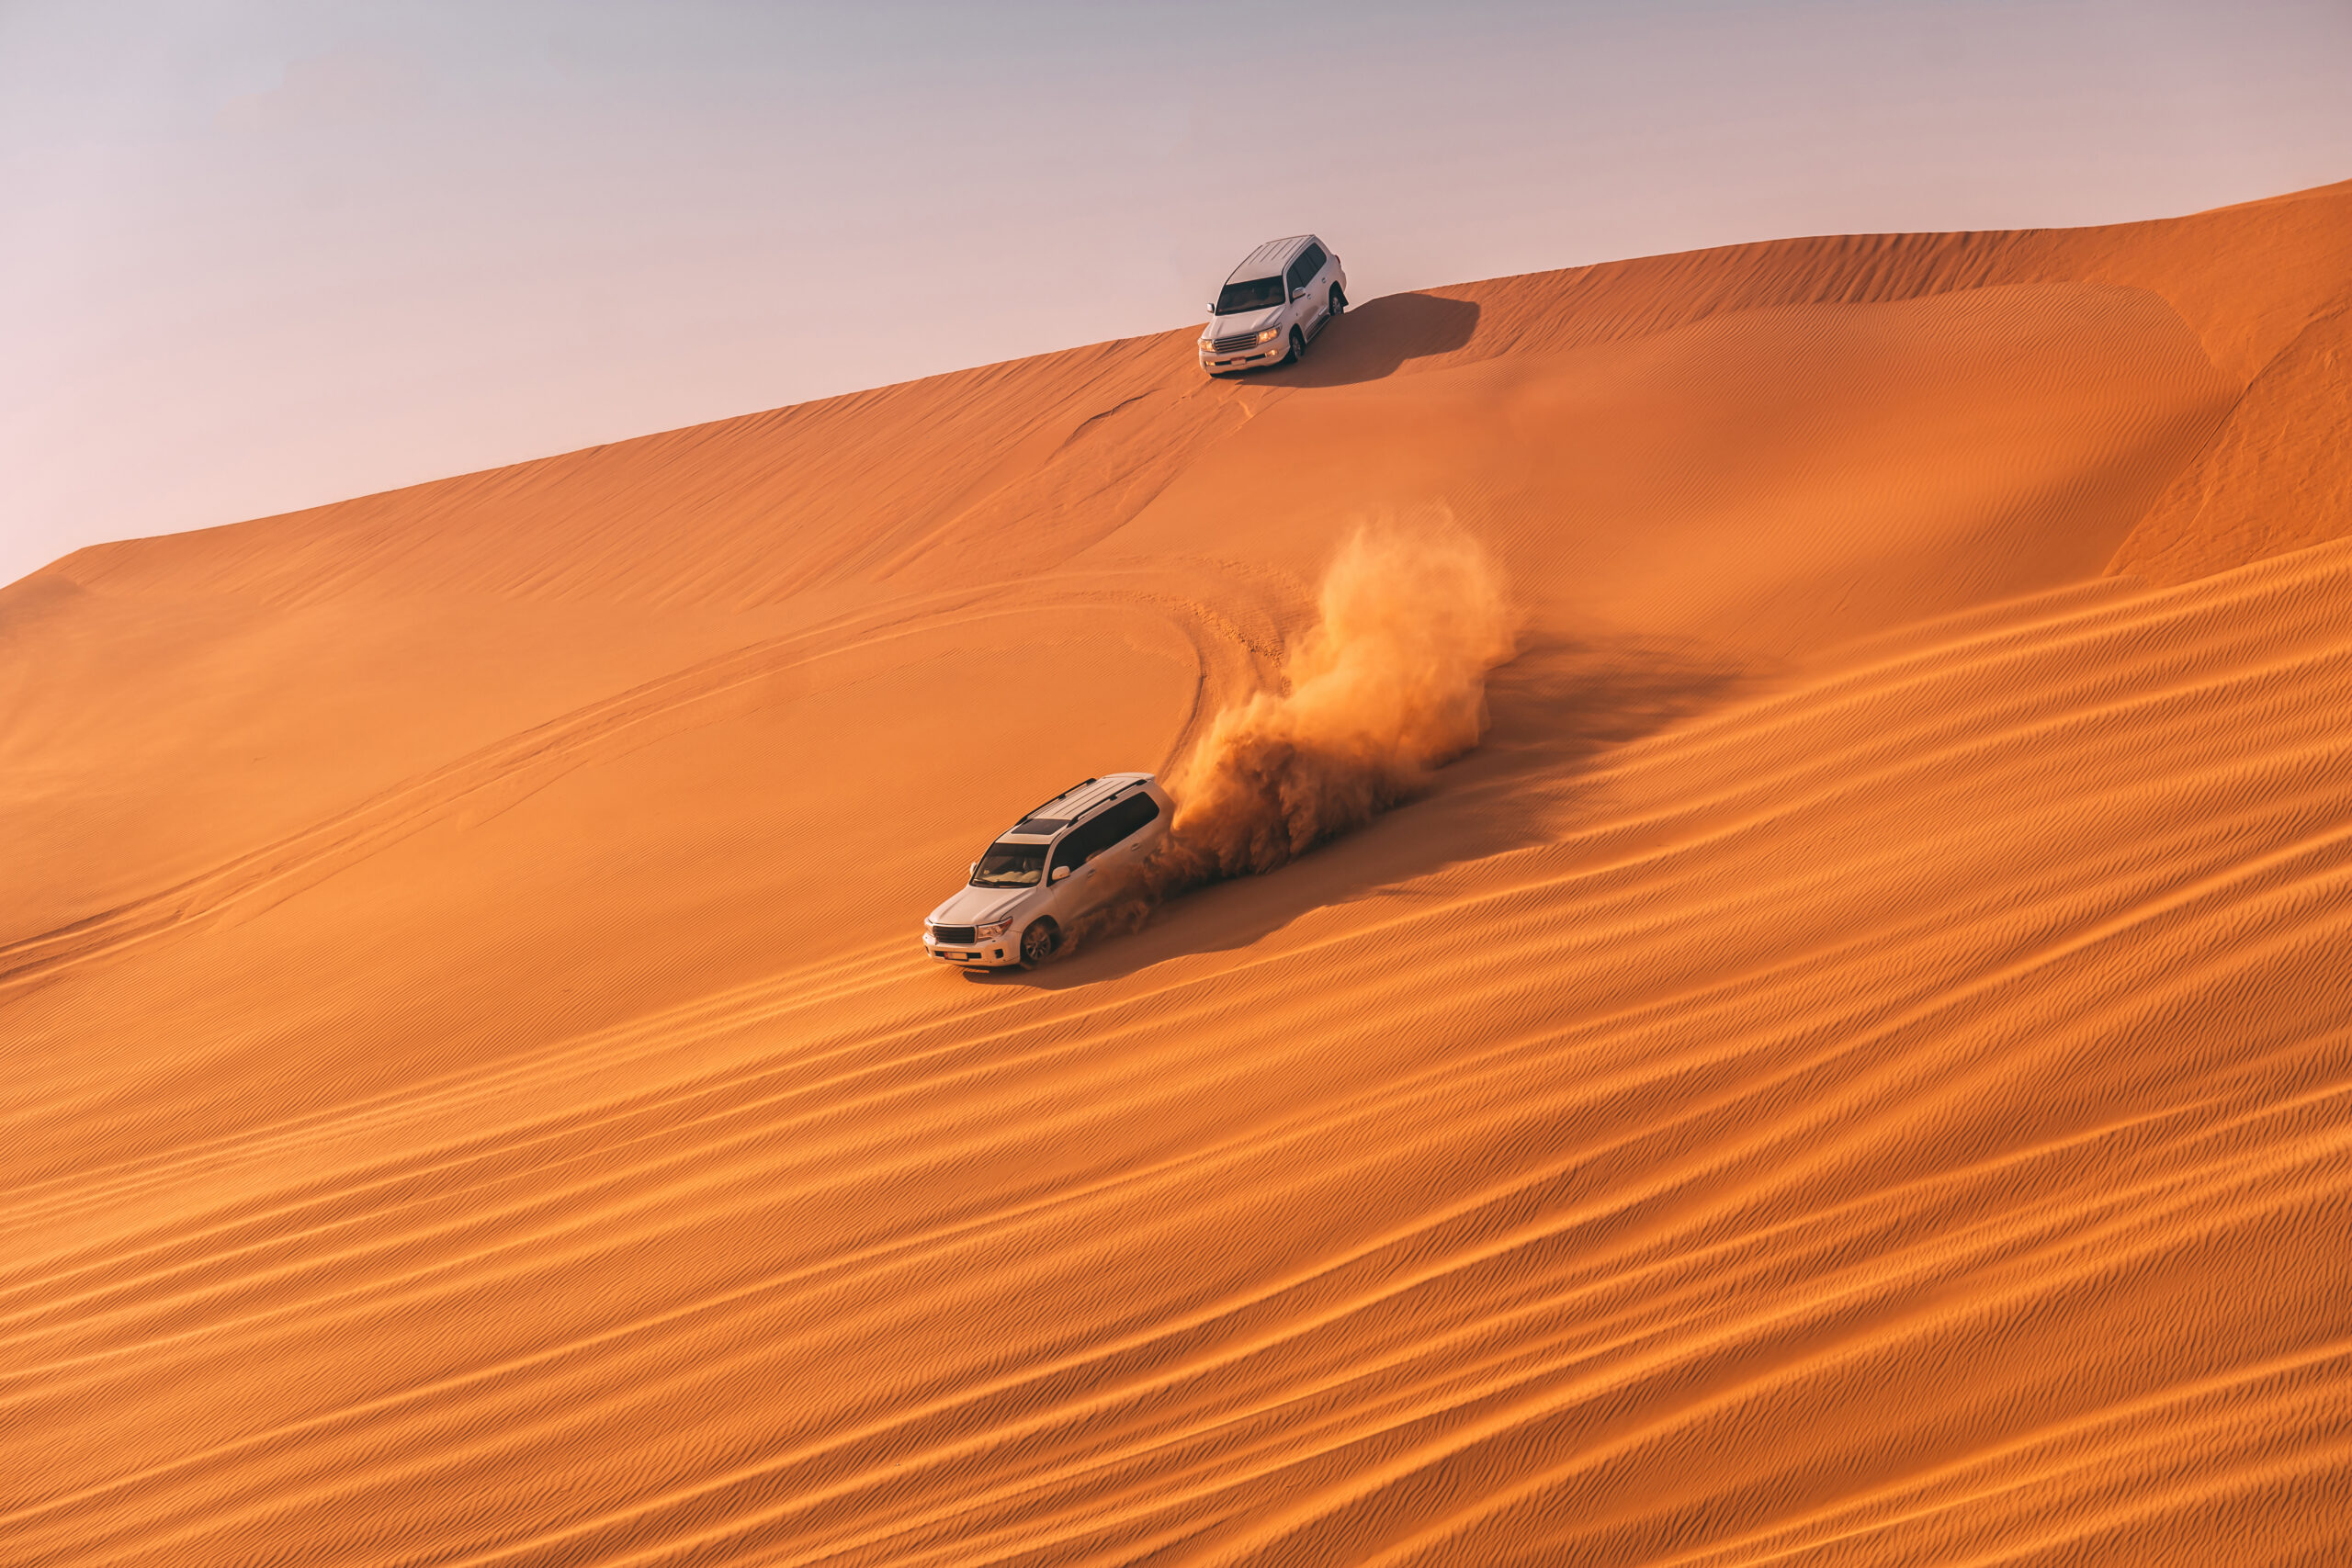 Dubai hot air balloon rides - Dune bashing